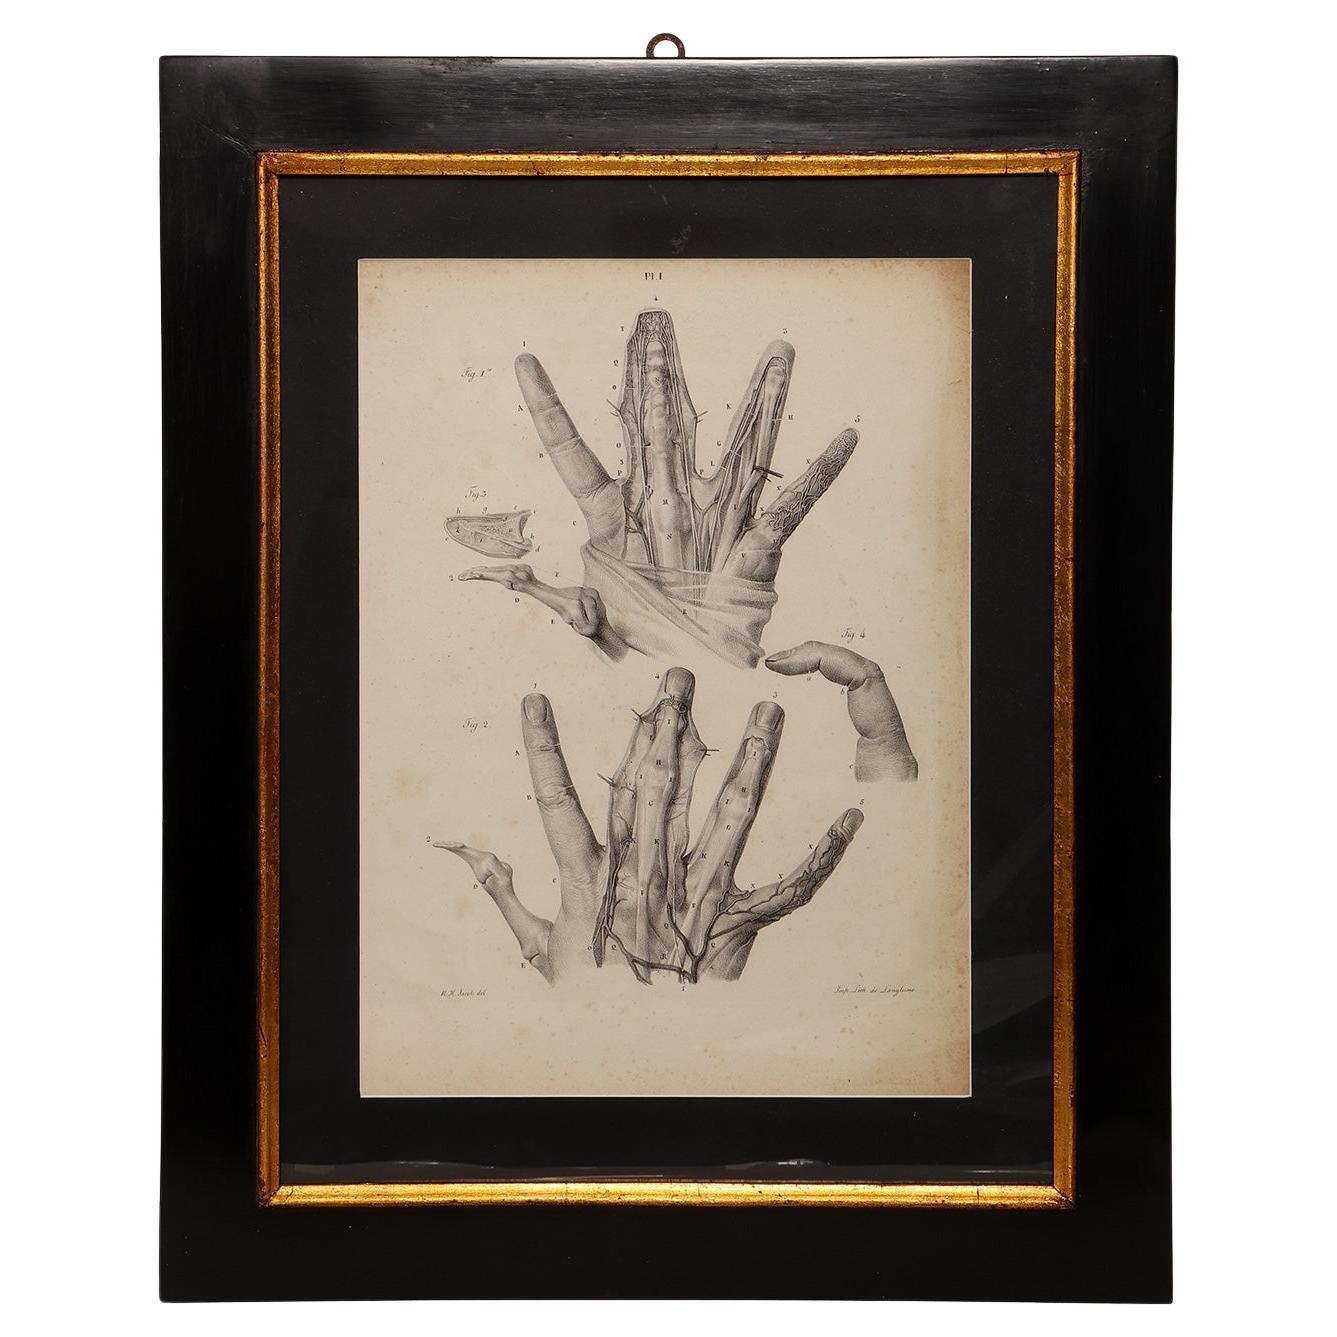 Lithographischer Druck auf Papier, der den Atlas der Hand darstellt, Frankreich 1850 ca.